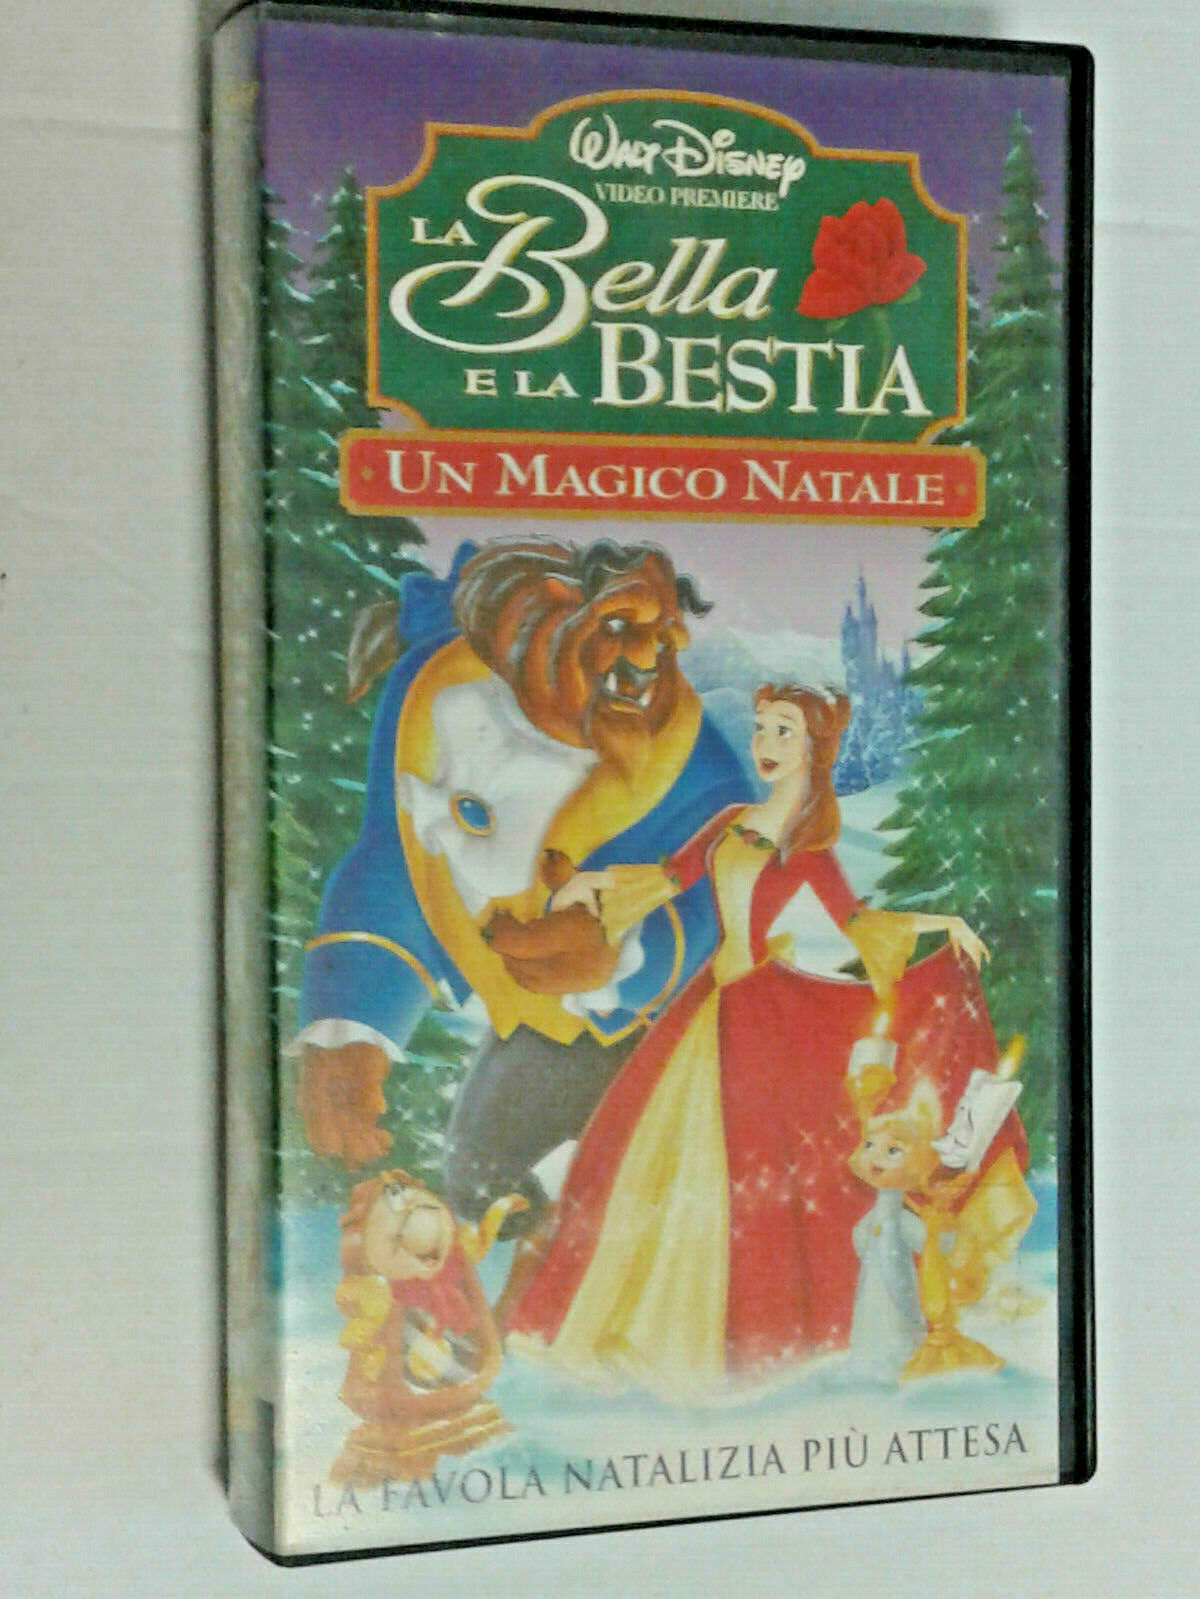 WALT DISNEY- (m)- LA BELLA E LA BESTIA- VHS ANIMAZIONE ORIGINALE-  videocassetta